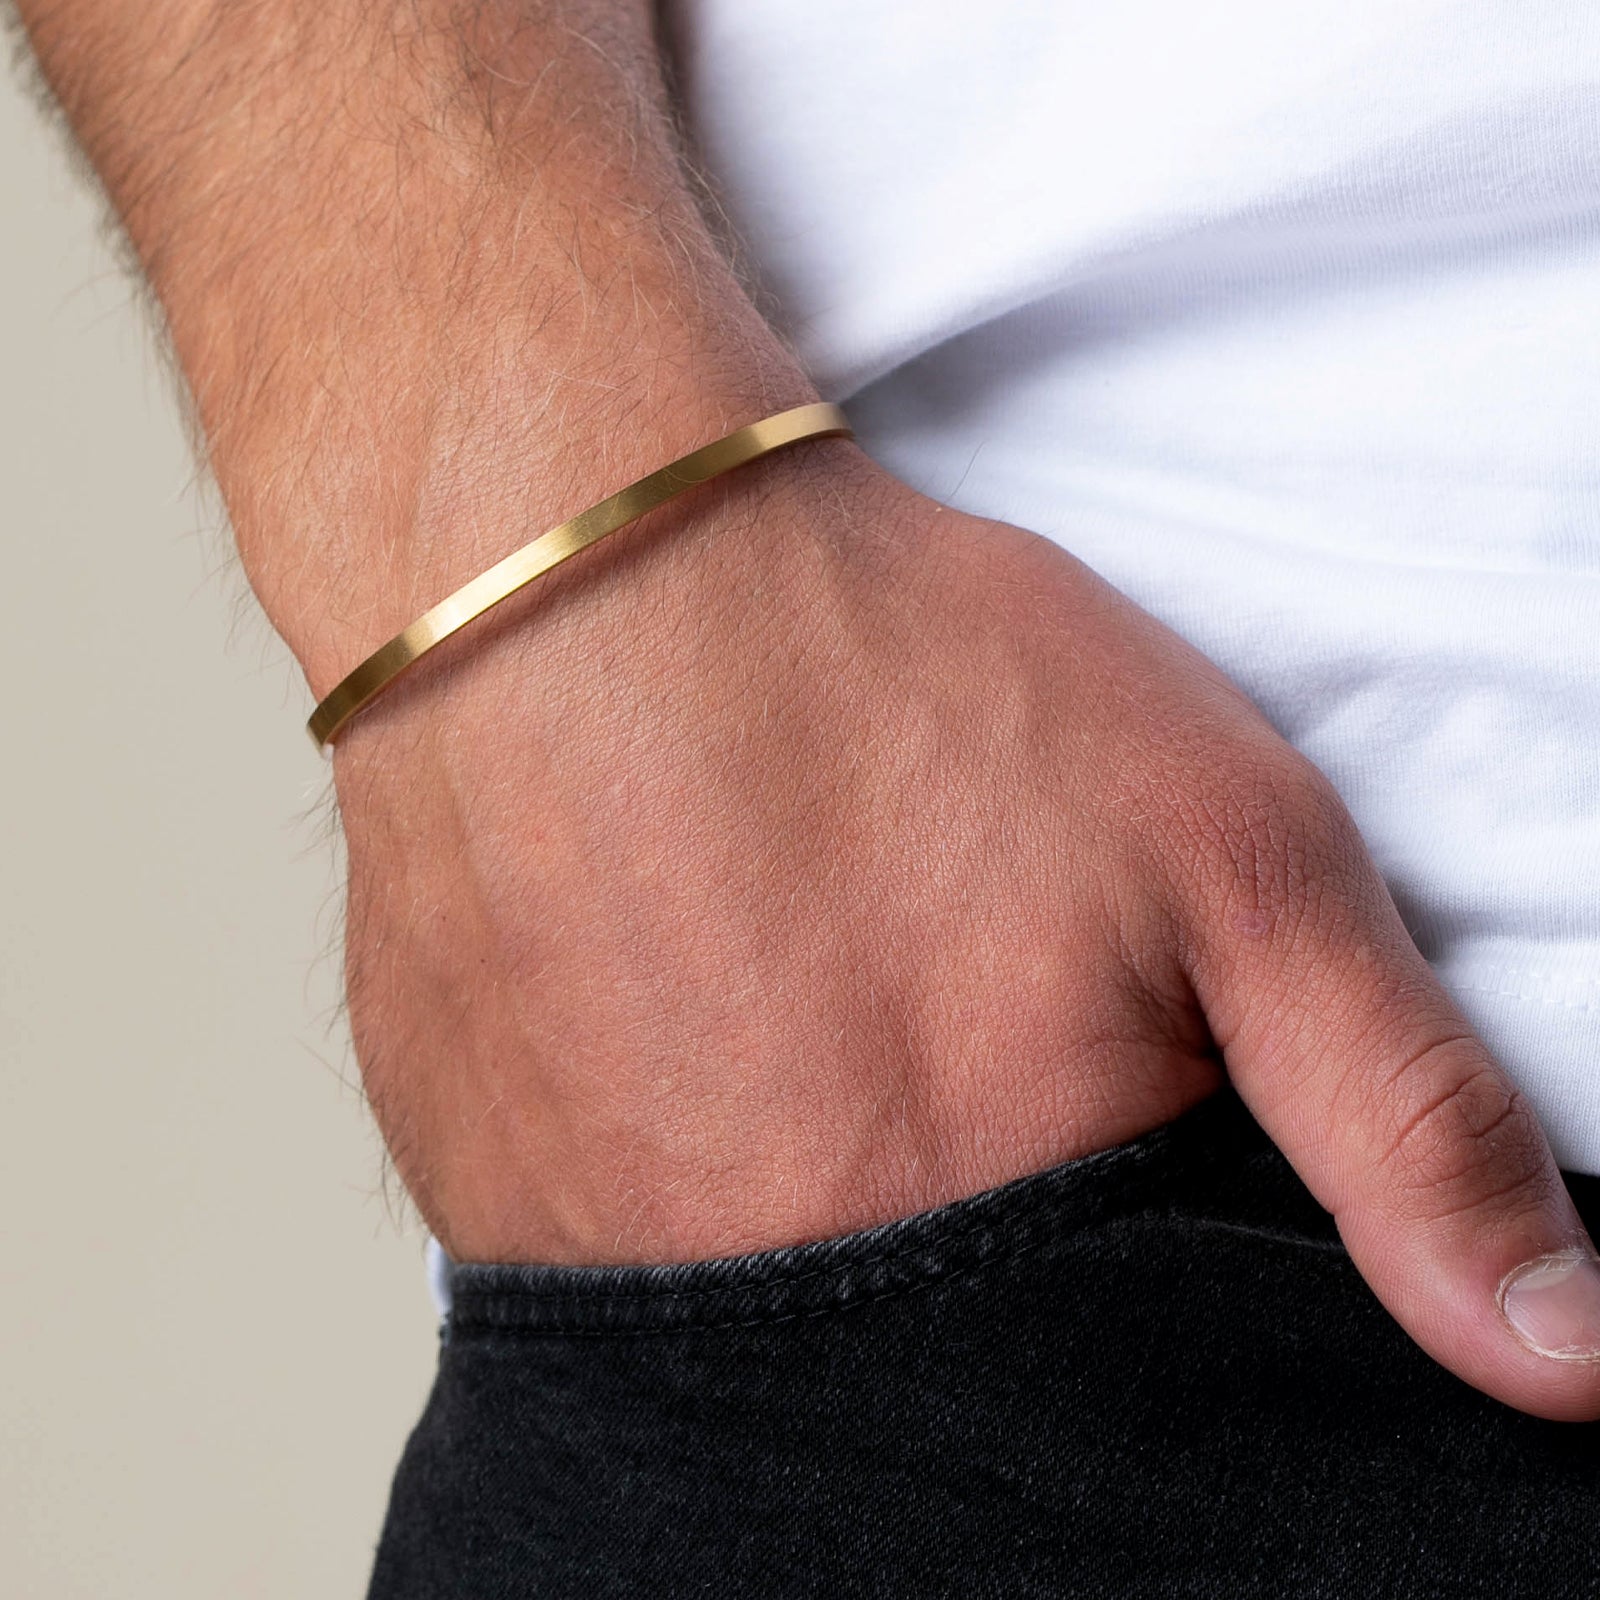 cuff gold bracelet